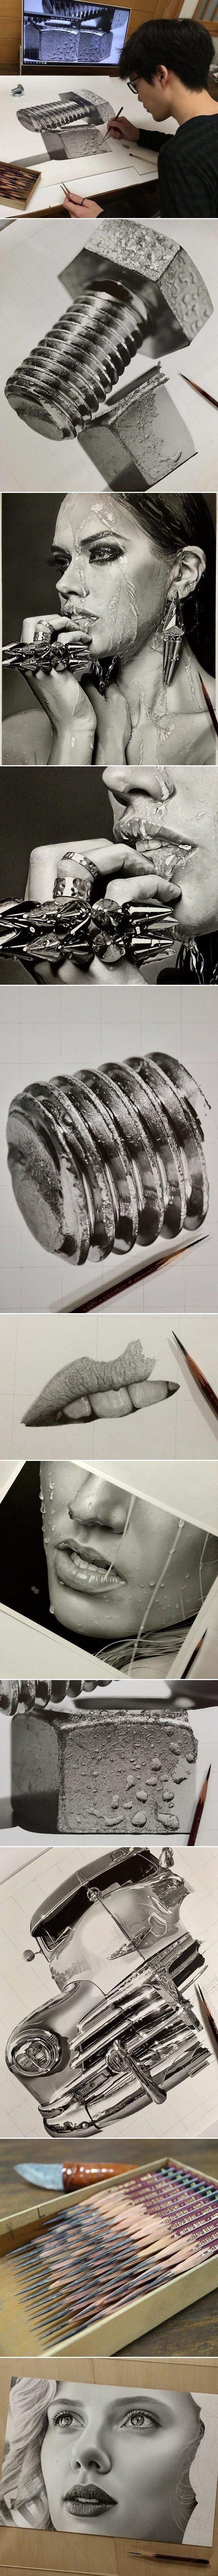 일본 22세 화가가 연필로 그린 작품